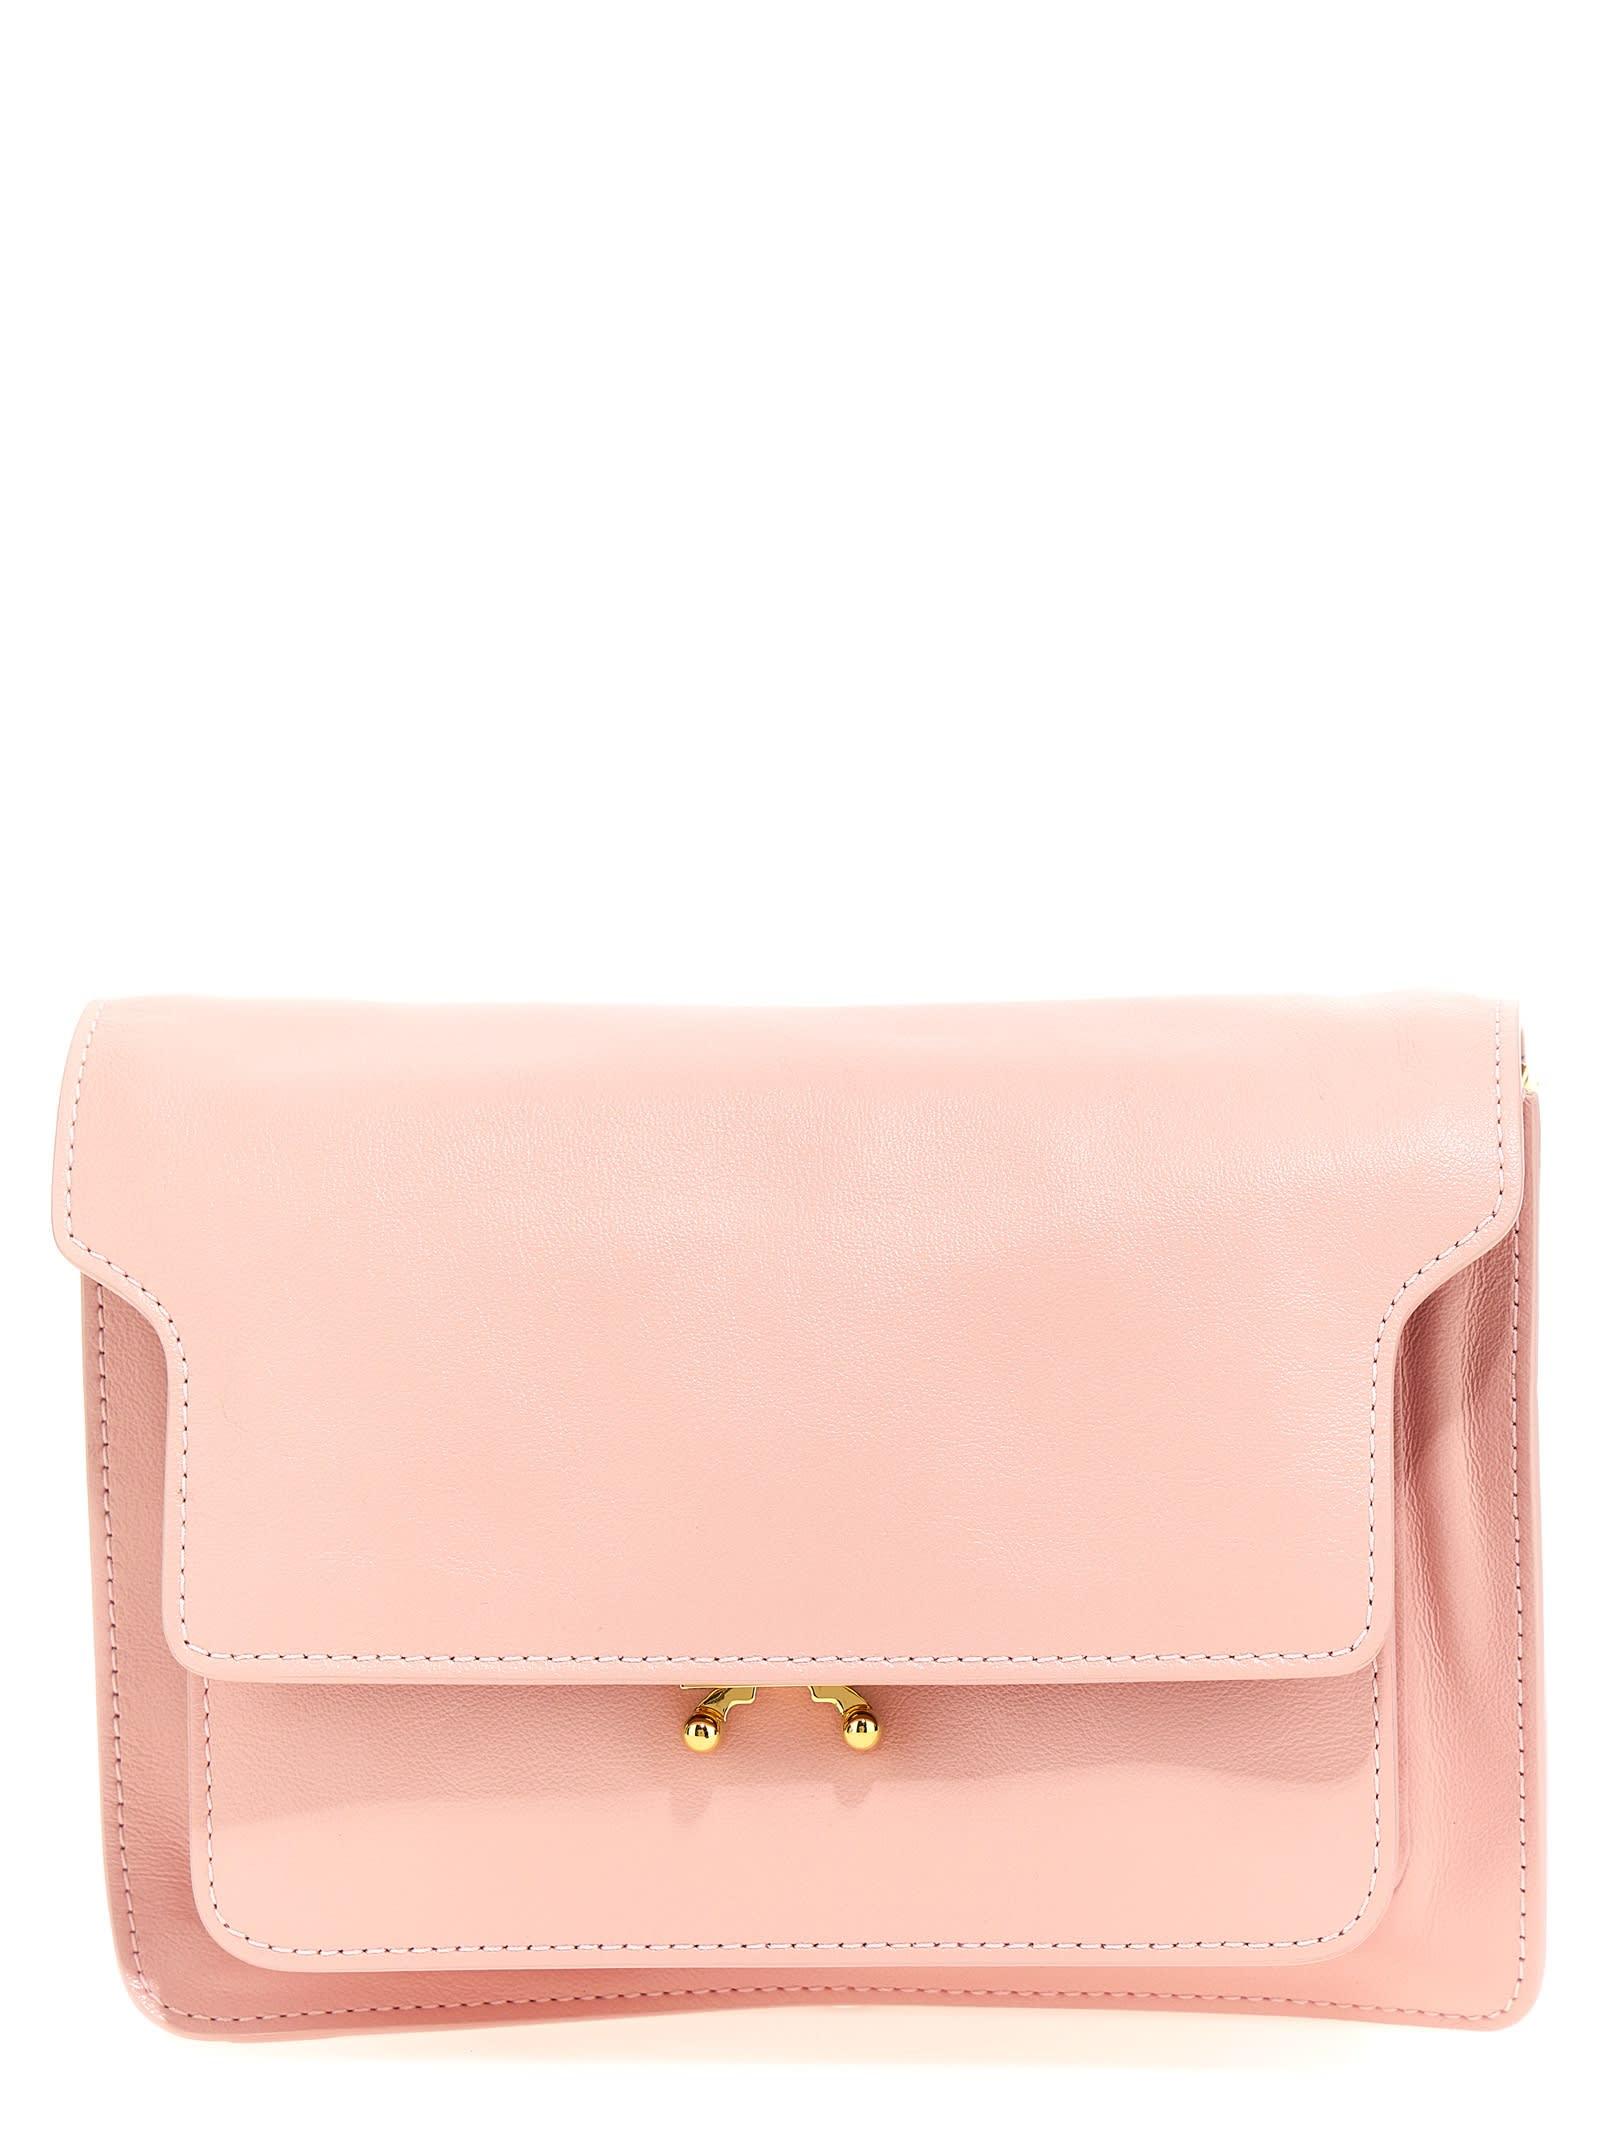 Marni Trunk Leather Shoulder Bag Medium / Pink